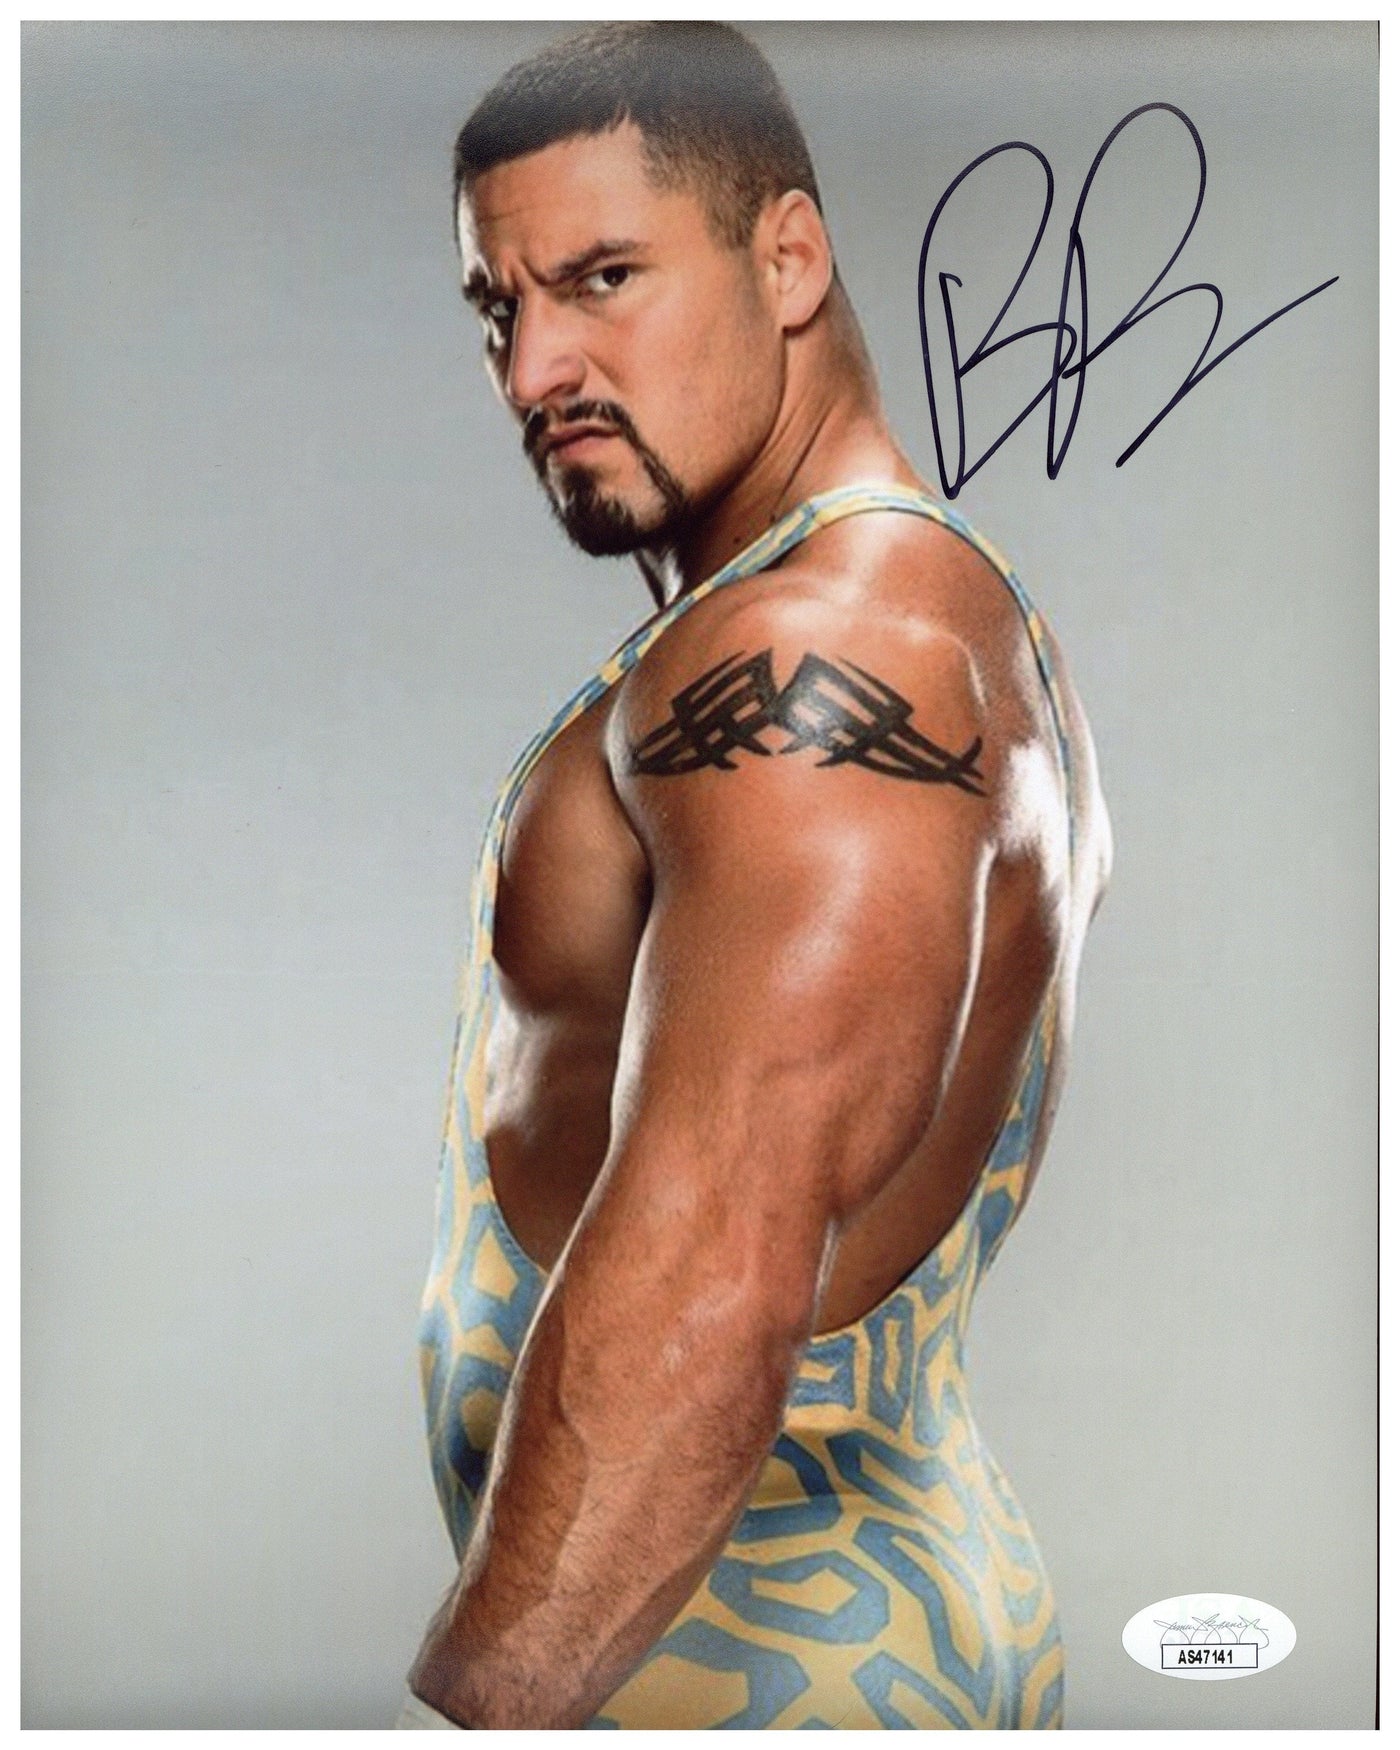 BRON BREAKKER SIGNED 8X10 PHOTO WWE NXT WRESTLER AUTOGRAPHED JSA COA 3